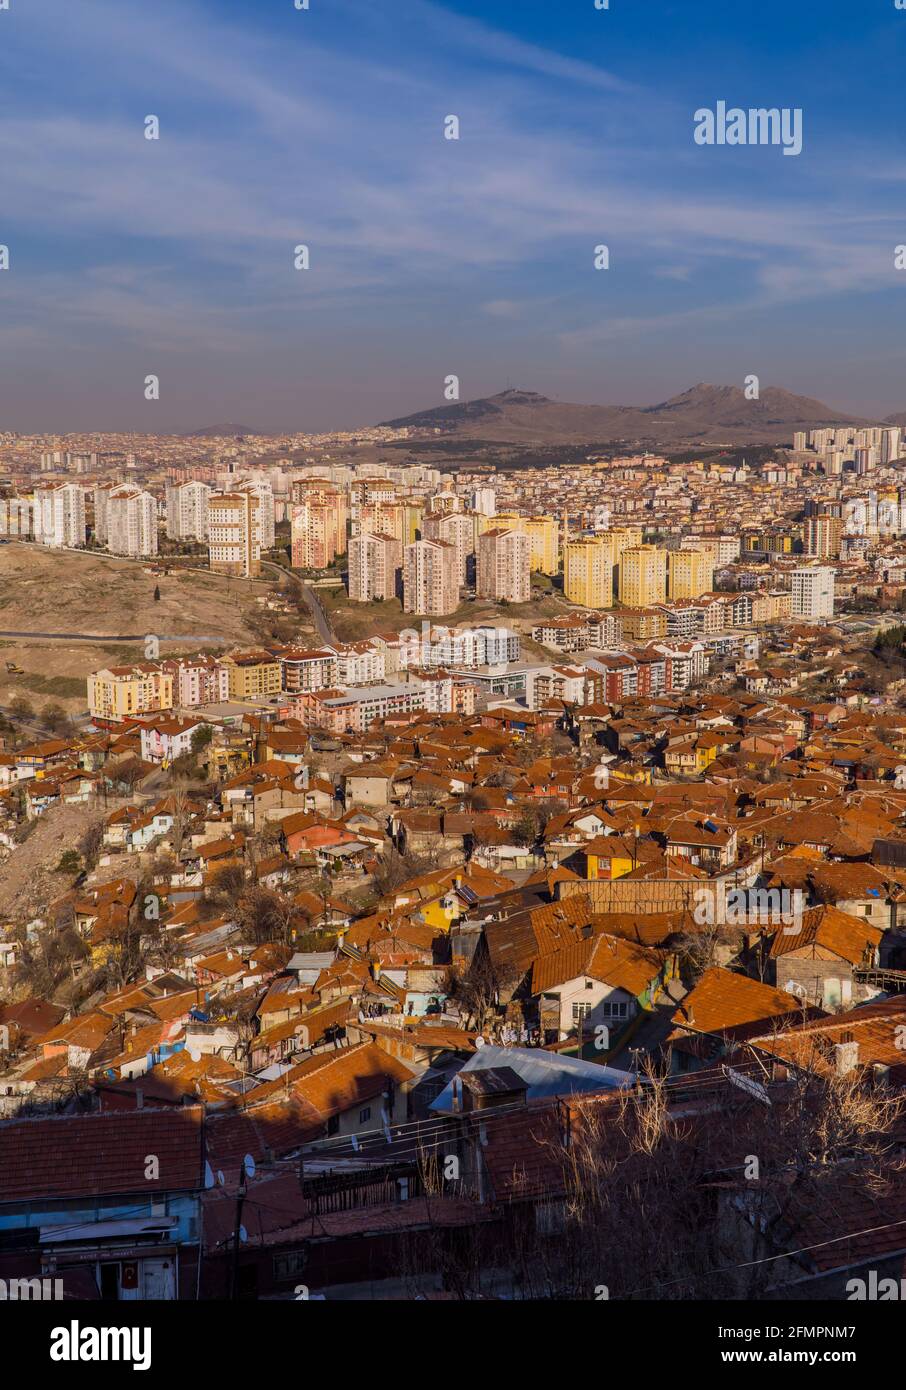 Ankara, Türkei - 12. März 2021 - Luftaufnahme der Stadt Ankara mit informellen Häusern und modernen Wohngegenden vom Schloss Ankara aus gesehen Stockfoto